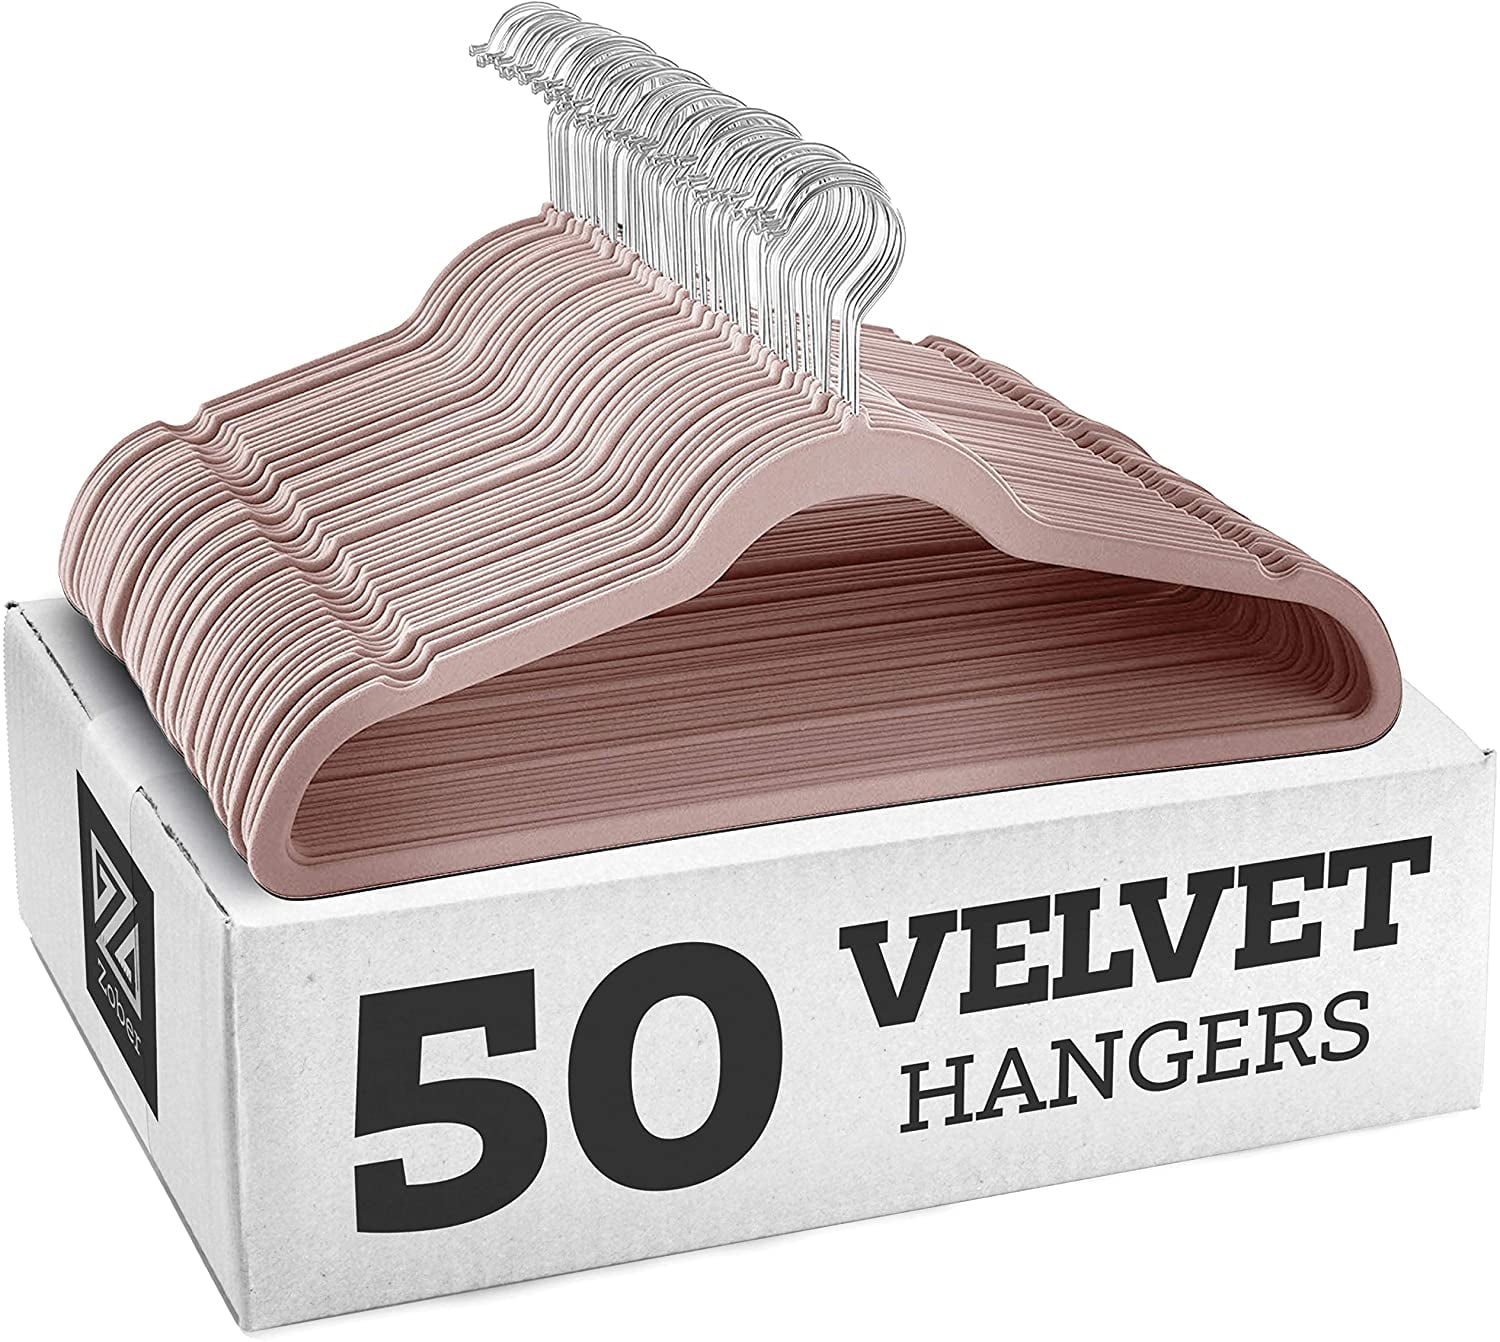 ZOBER Premium Kids Velvet Hangers (14” Inch - 50 Pack) Non Slip